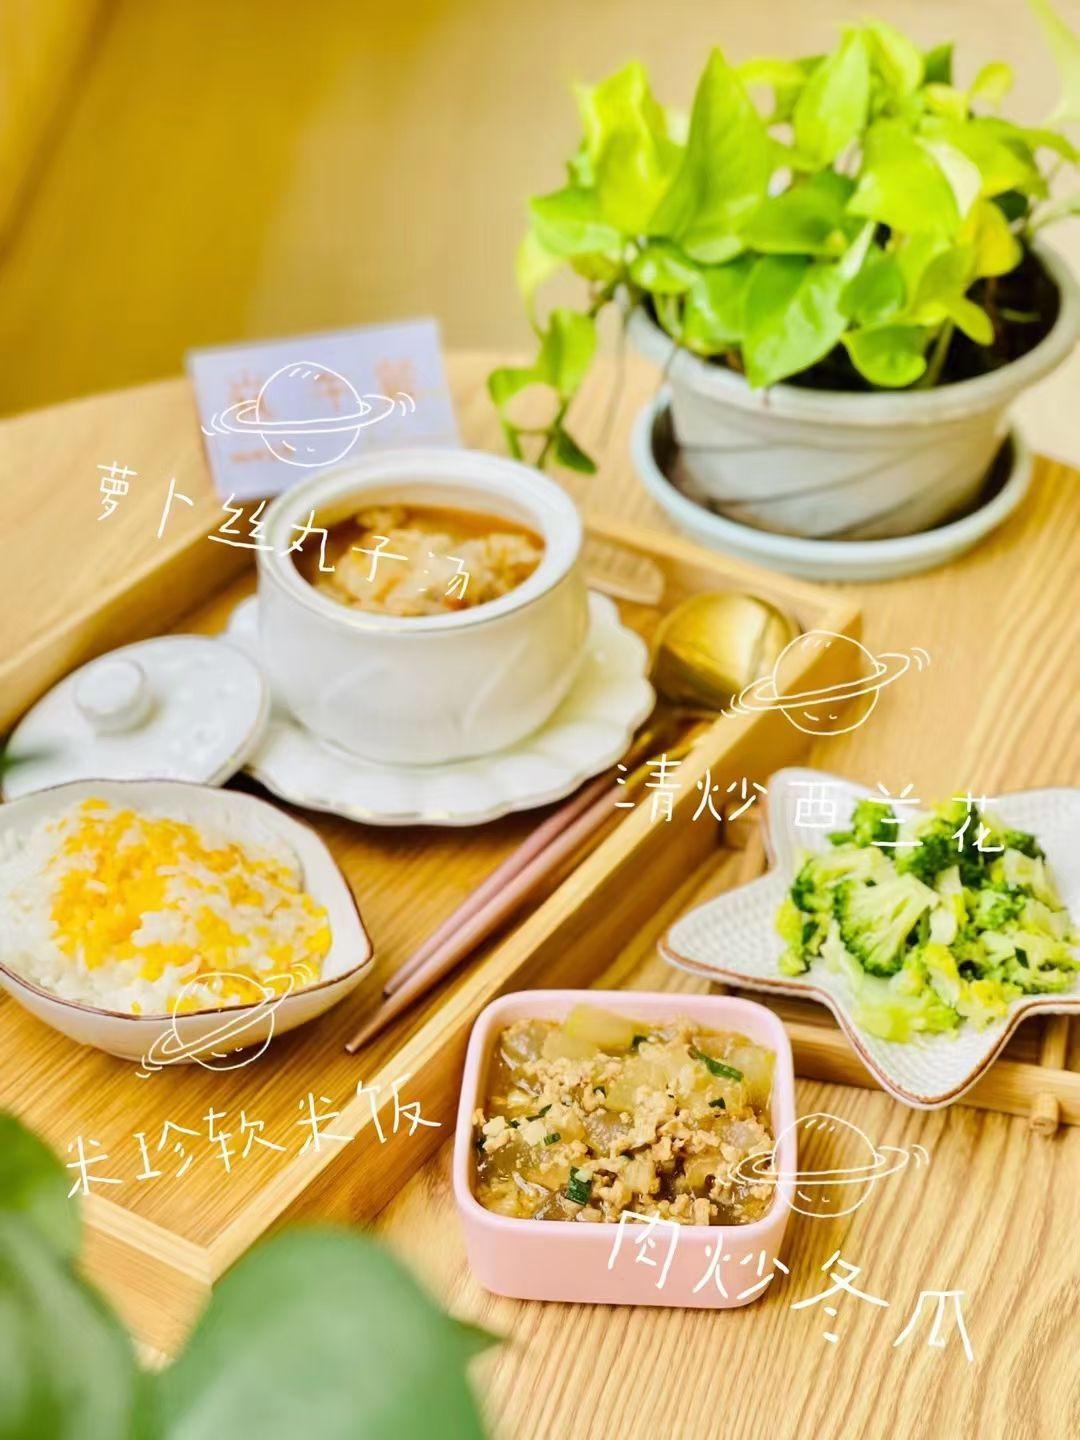 分享我家午餐食谱：拔丝红薯、辣炒鱿鱼、紫菜蛋汤 - 哔哩哔哩